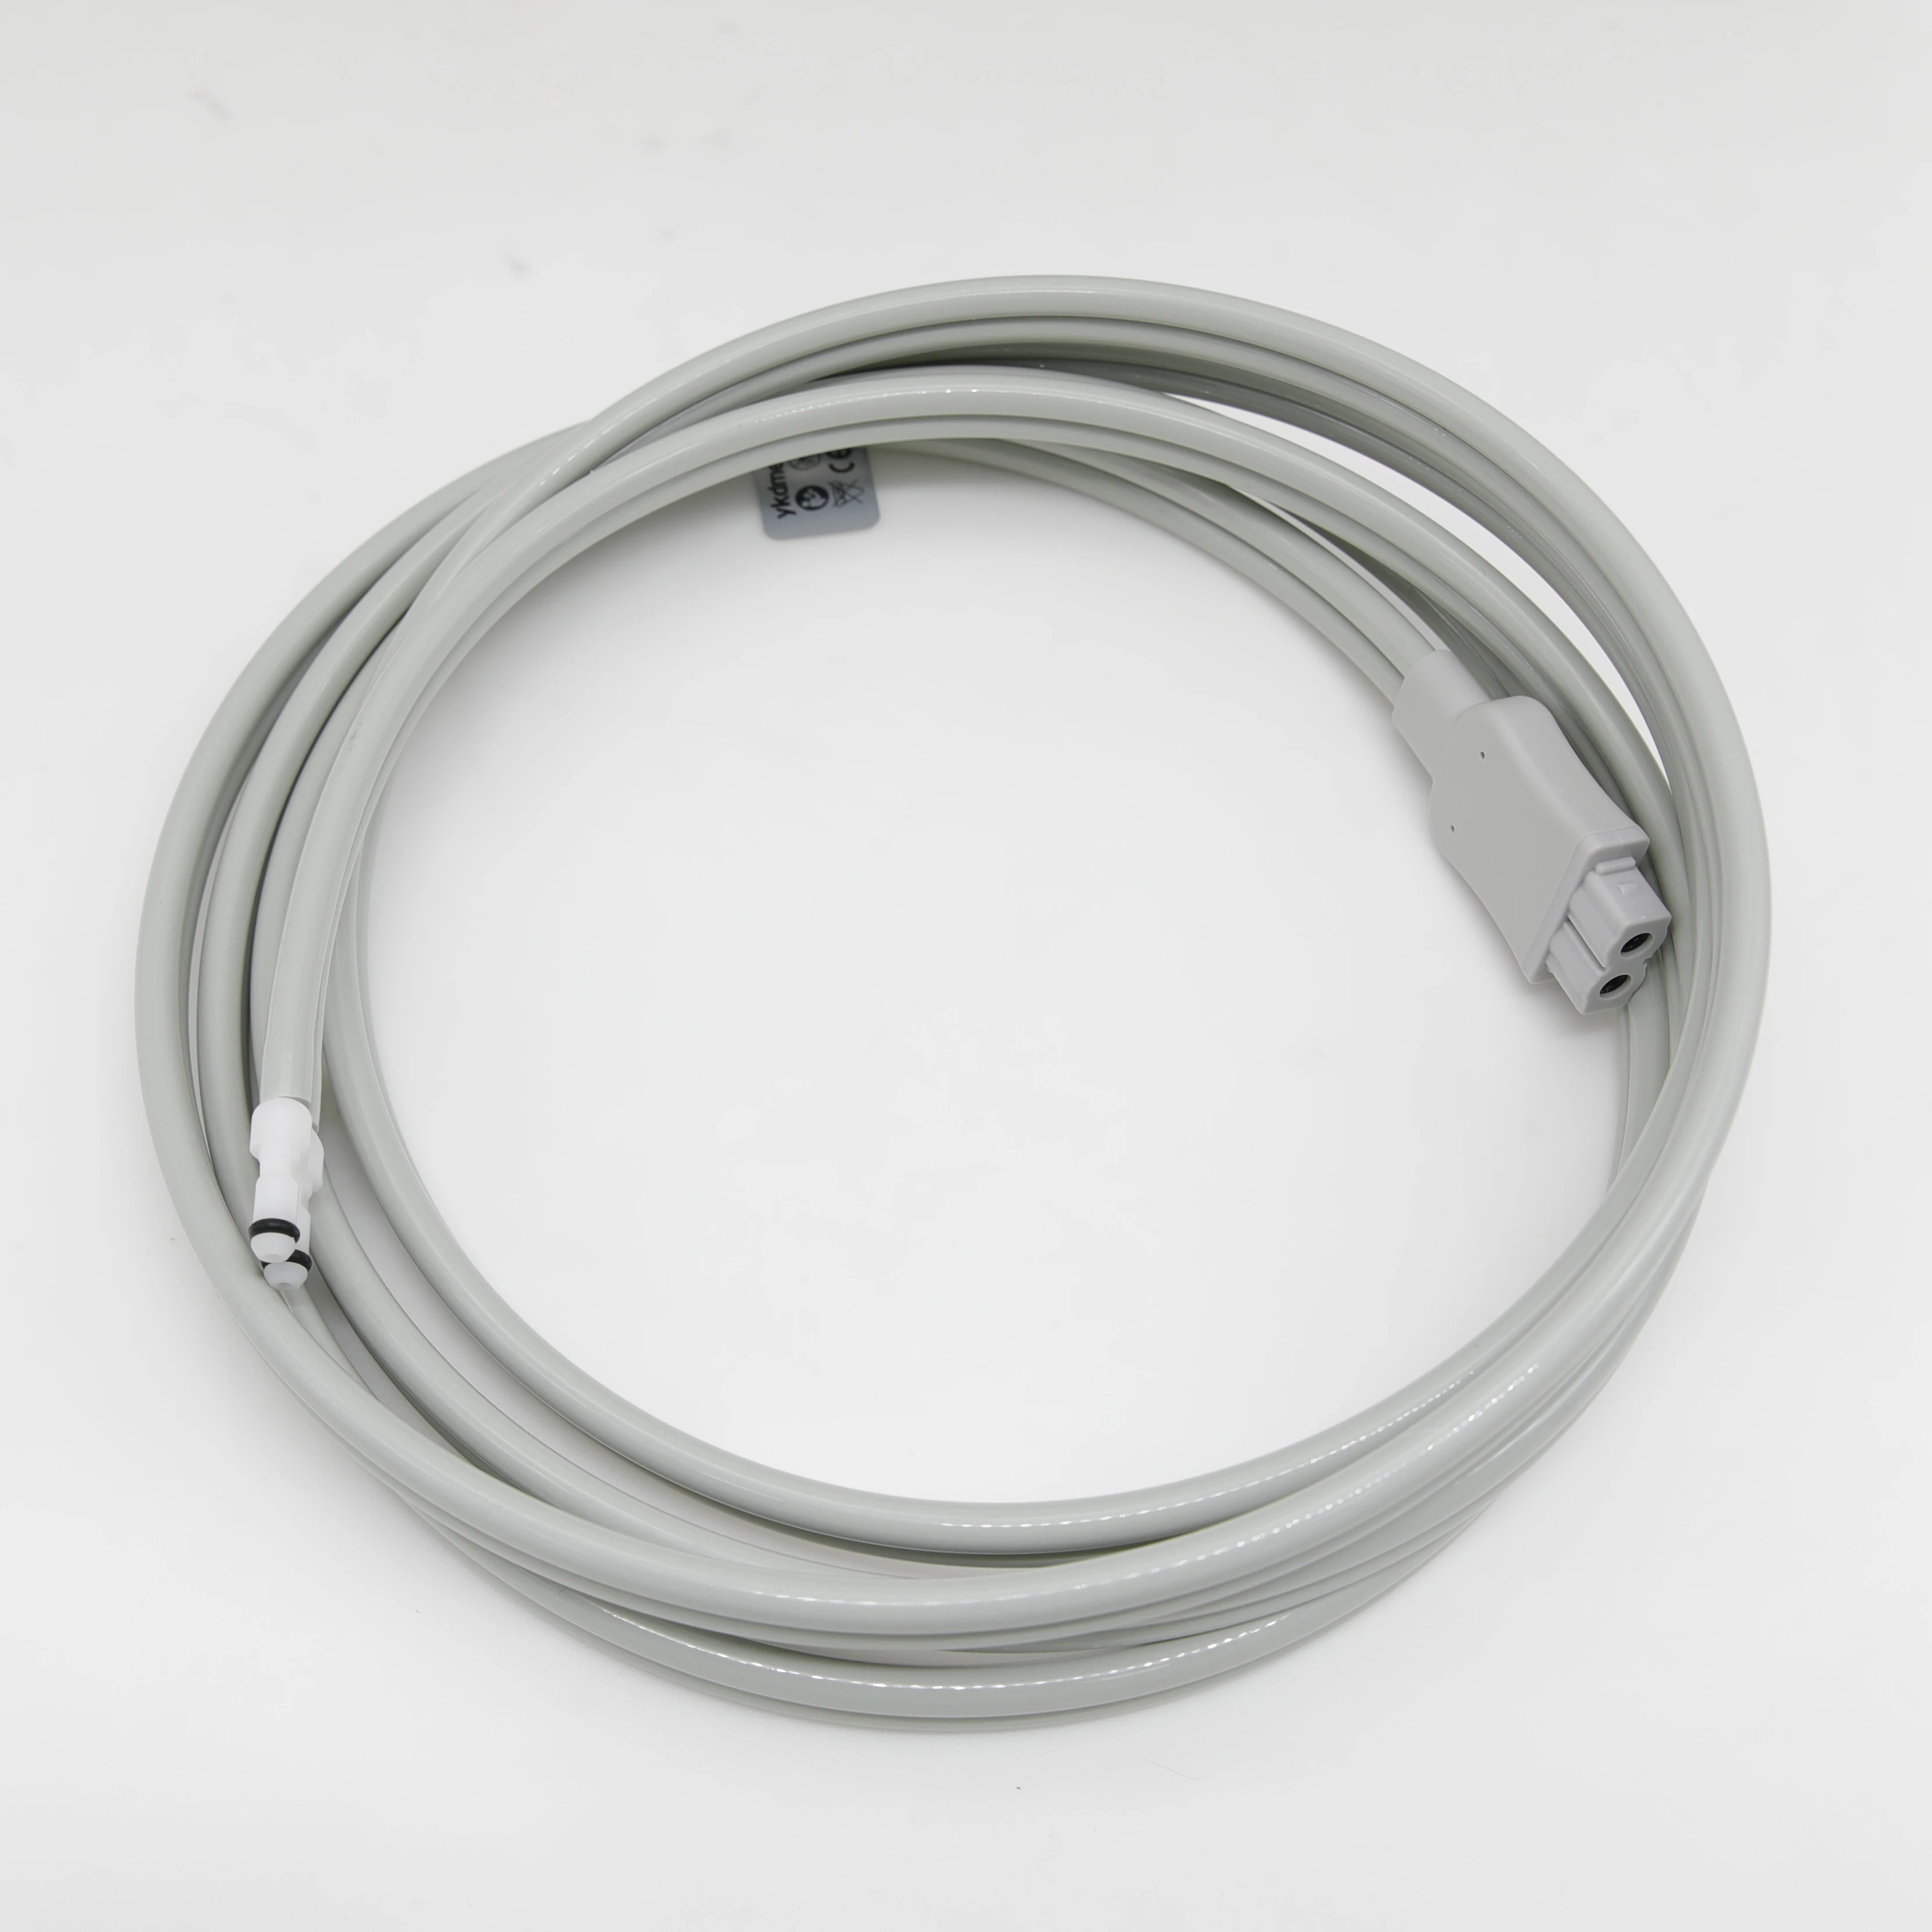 Удлинительная трубка GE CARESCAPE ONE для измерения артериального давления, Серая двойная трубка из ТПУ, Наружный диаметр 6,0/A79/A81A 0